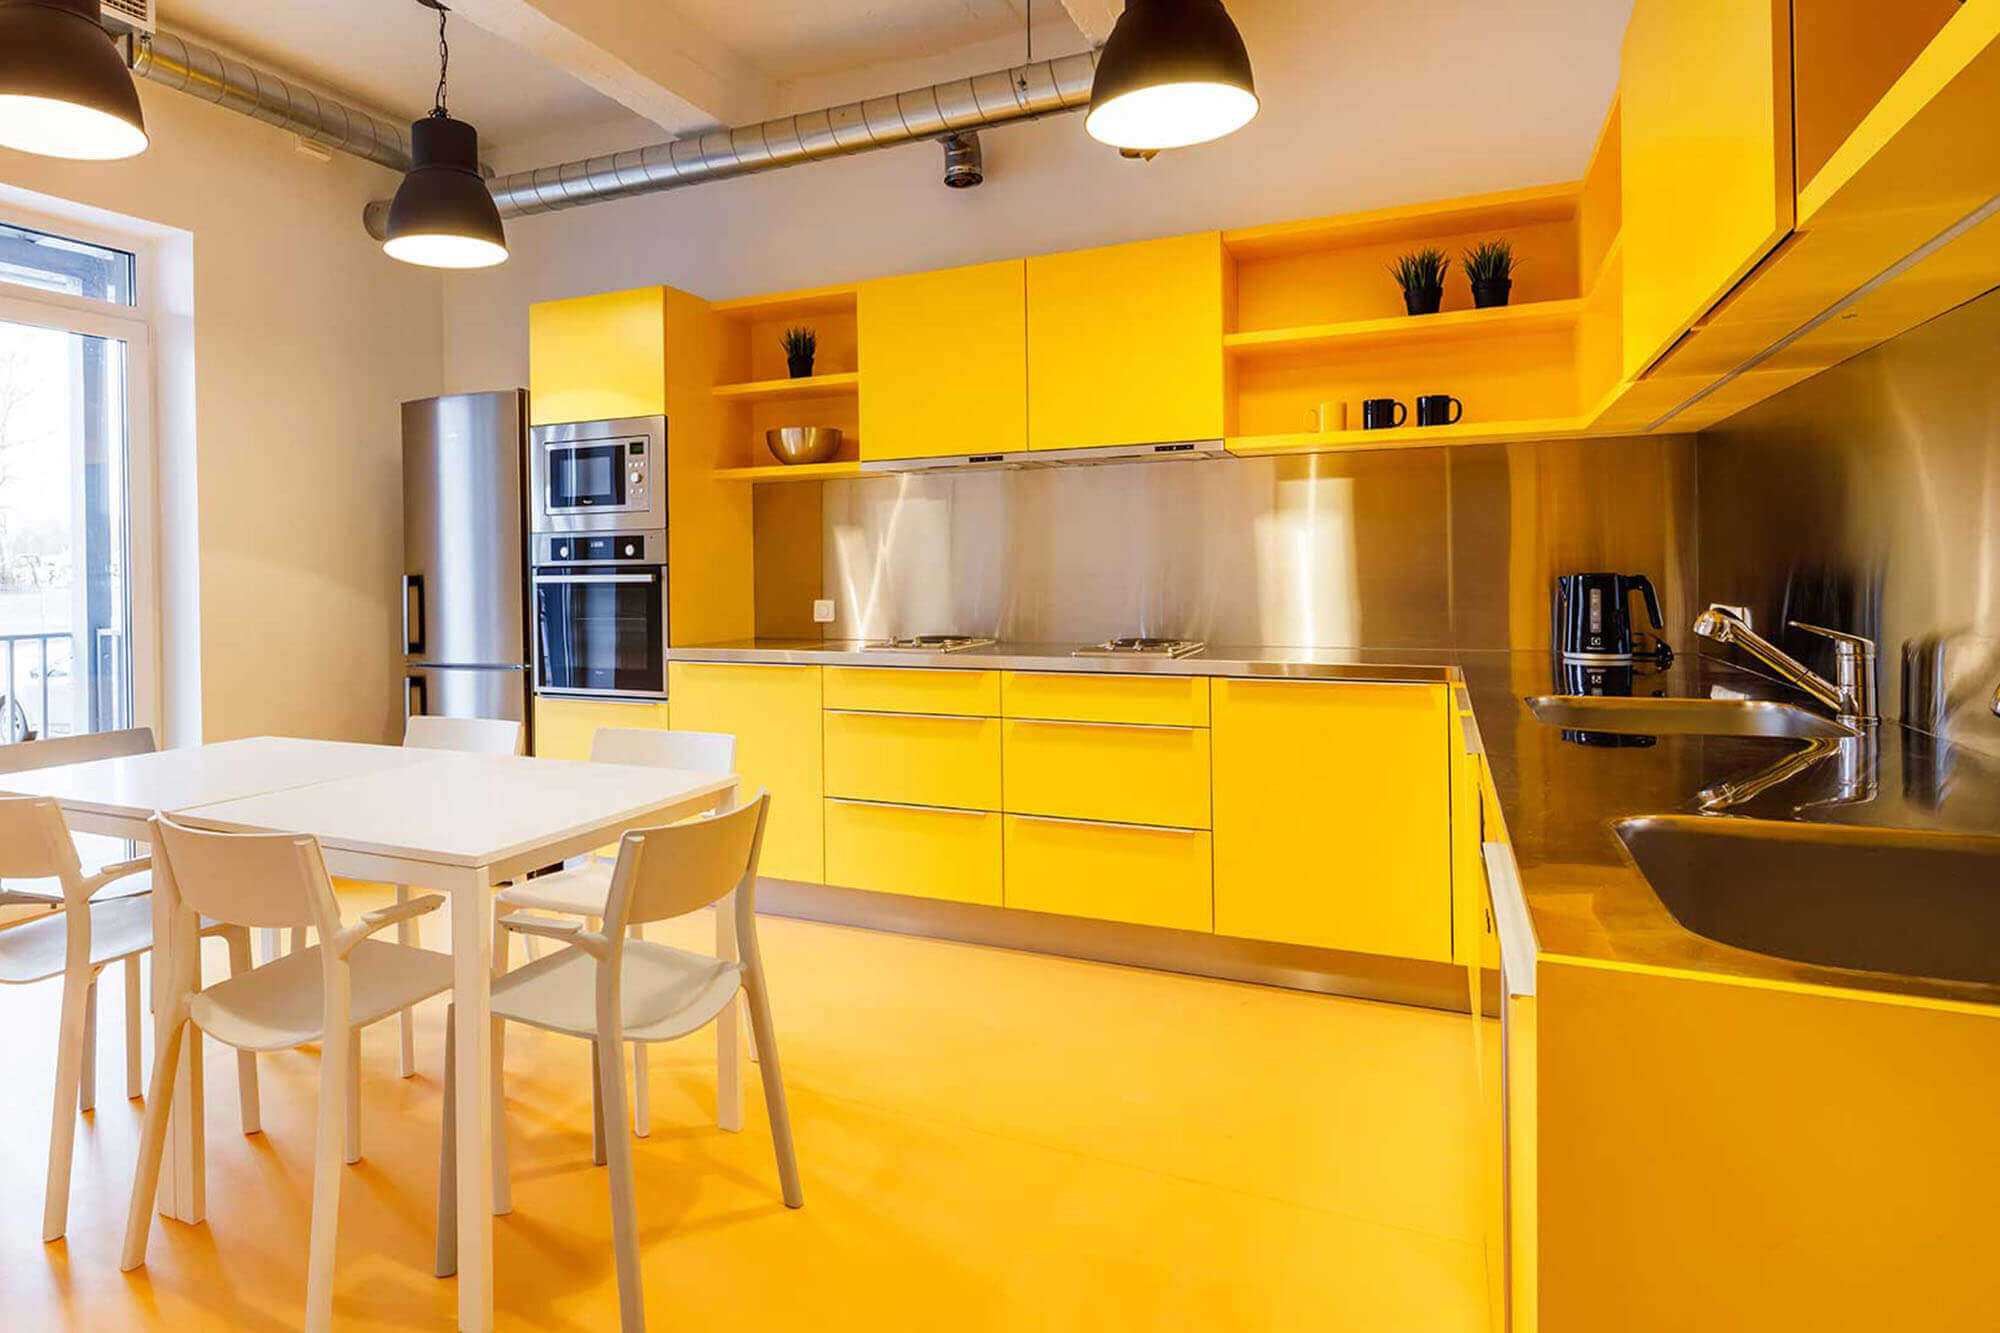 Бело желтая кухня. Желтые кухни. Кухня в желтом цвете. Желтый кухонный гарнитур. Желтая кухня в интерьере.